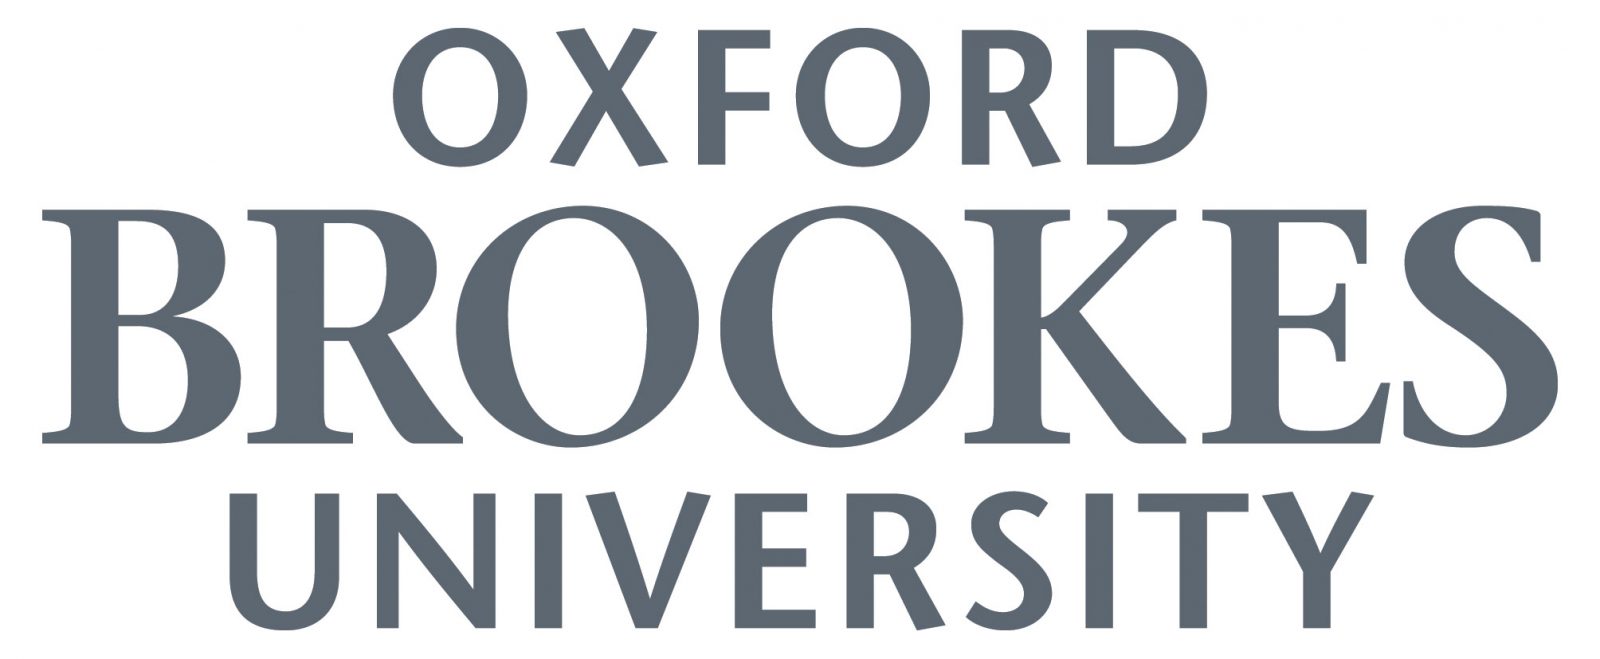 Digital Marketing Courses in Oxford - OBU logo